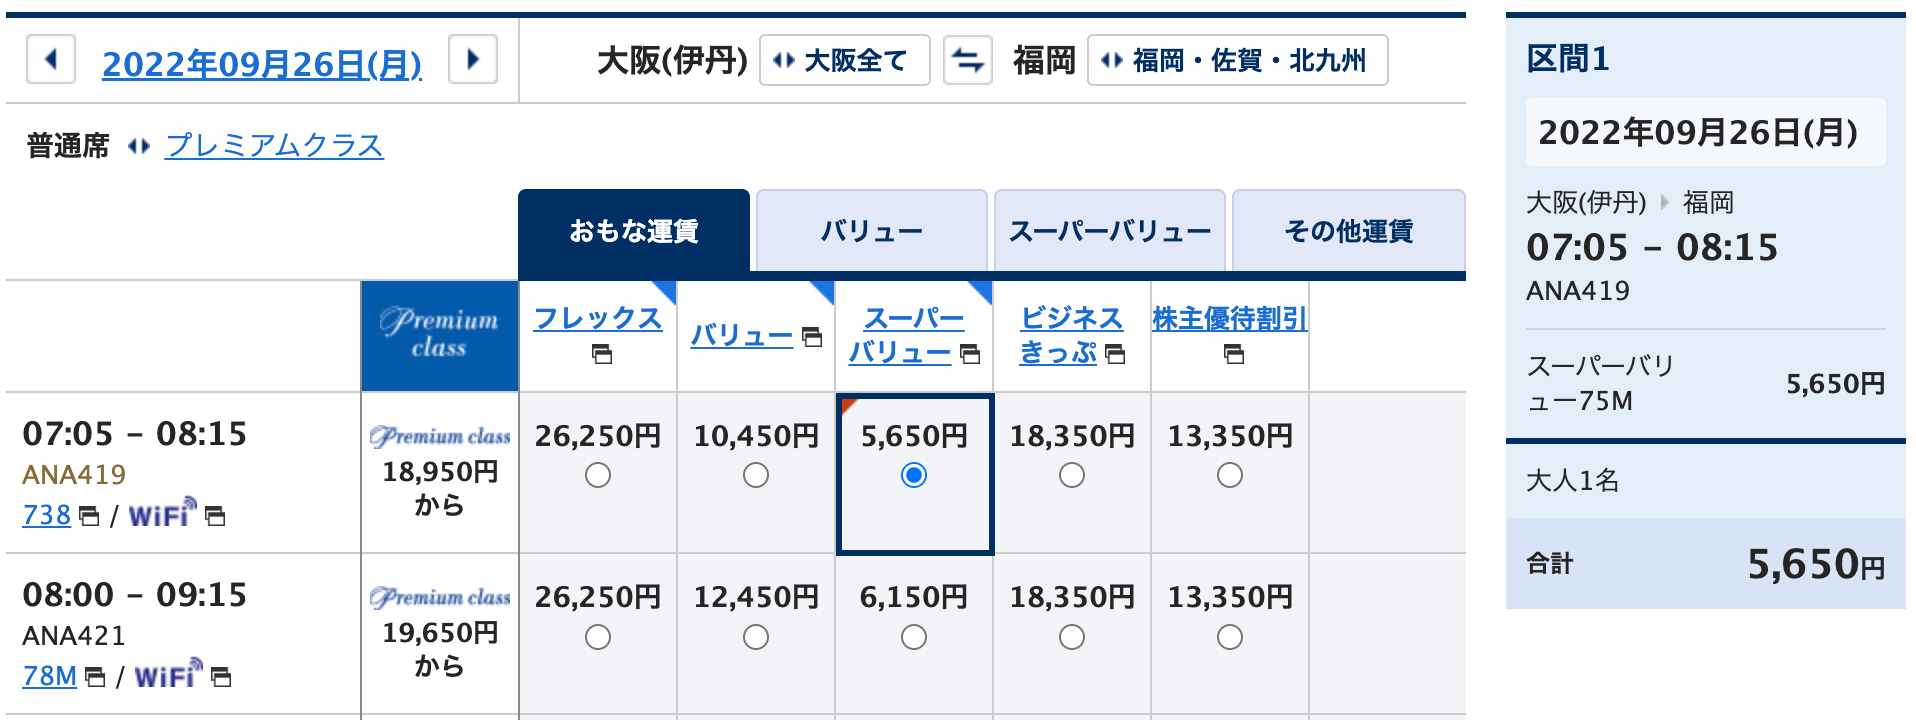 ANA SUPER VALUE 75 20220926 大阪（伊丹）ー福岡の価格